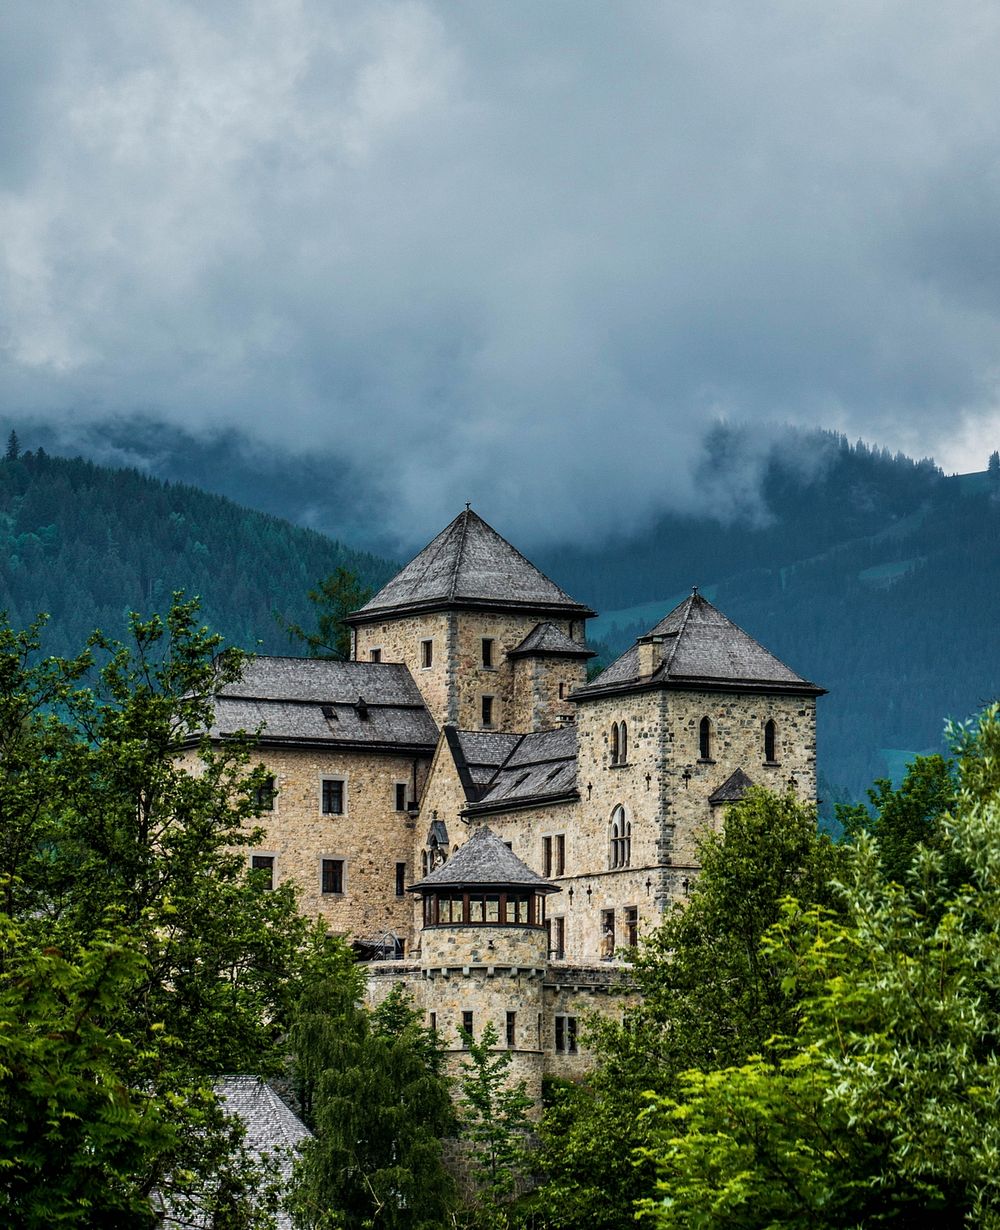 Castle in Austria, bruck mountains. Free public domain CC0 photo.